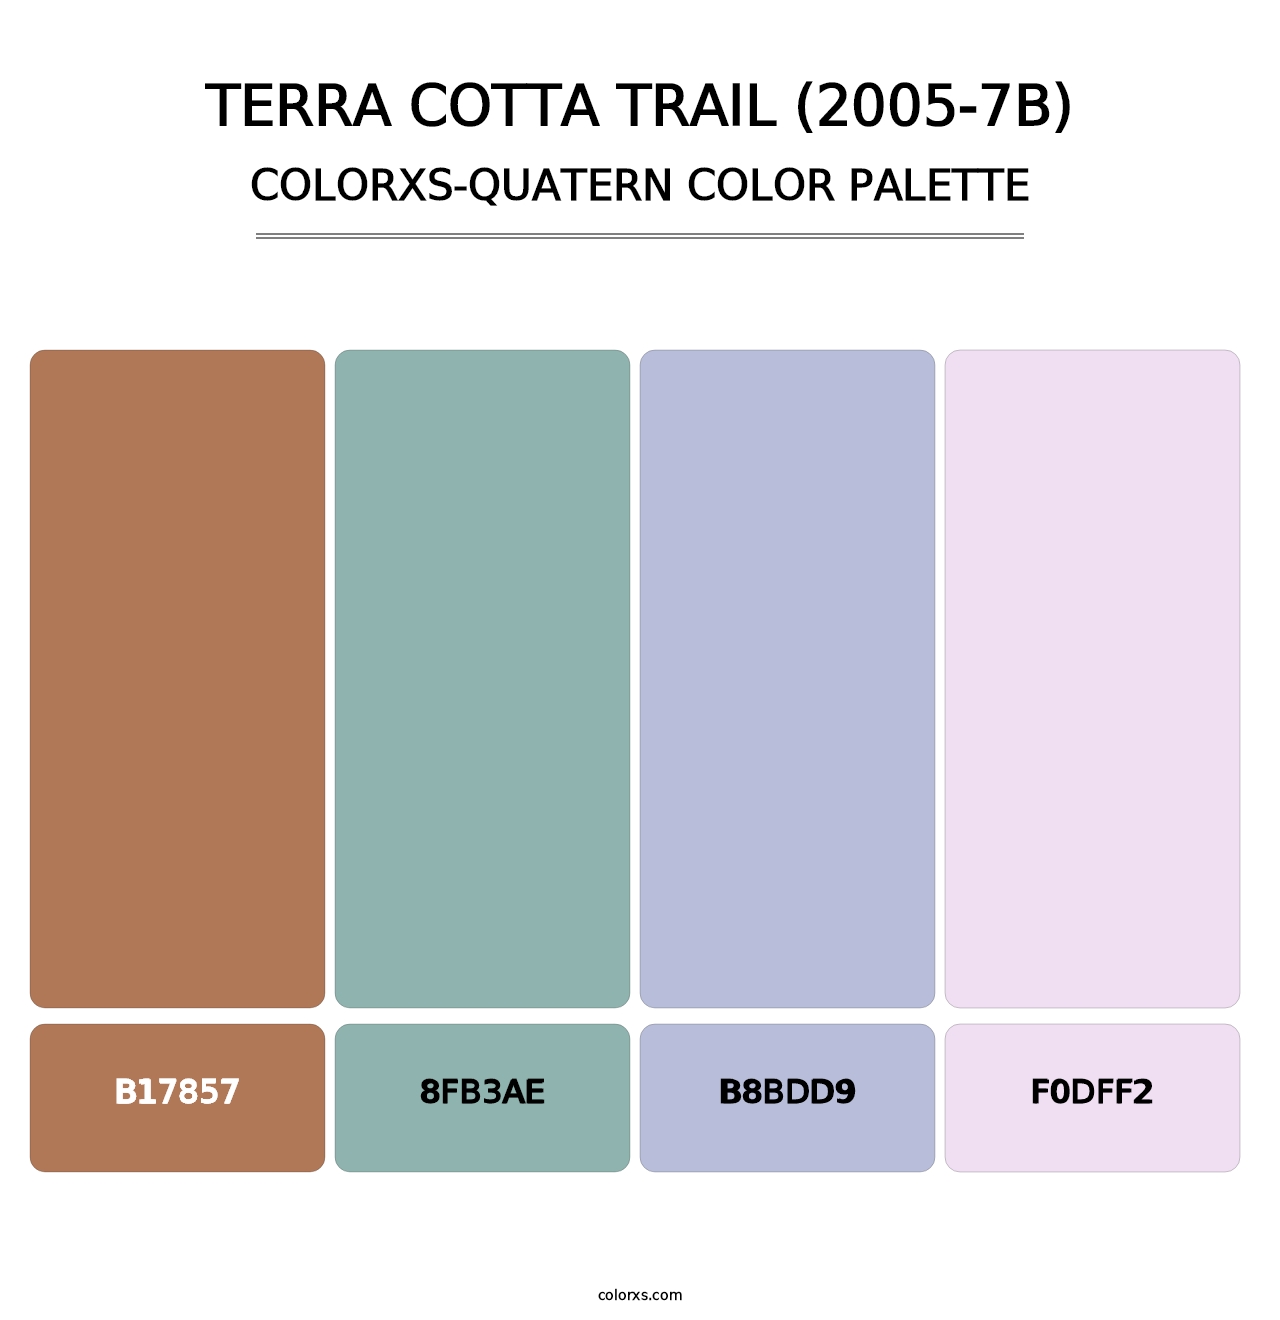 Terra Cotta Trail (2005-7B) - Colorxs Quatern Palette